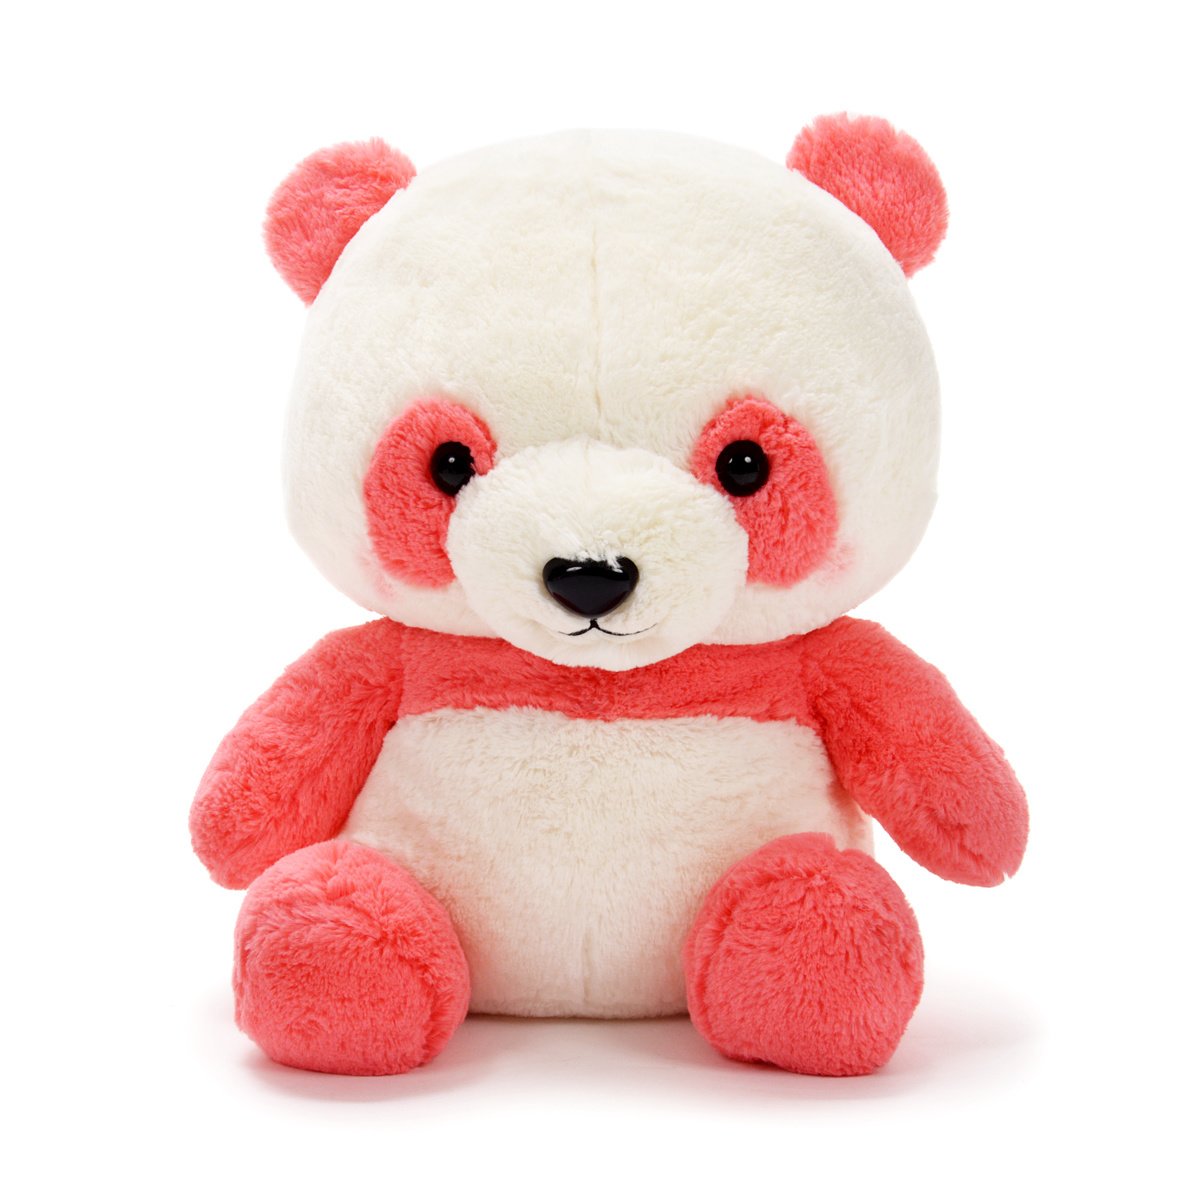 Plush Panda, Amuse, Honwaka Panda Baby, Strawberry Milk, Pink / White, 16 Inches